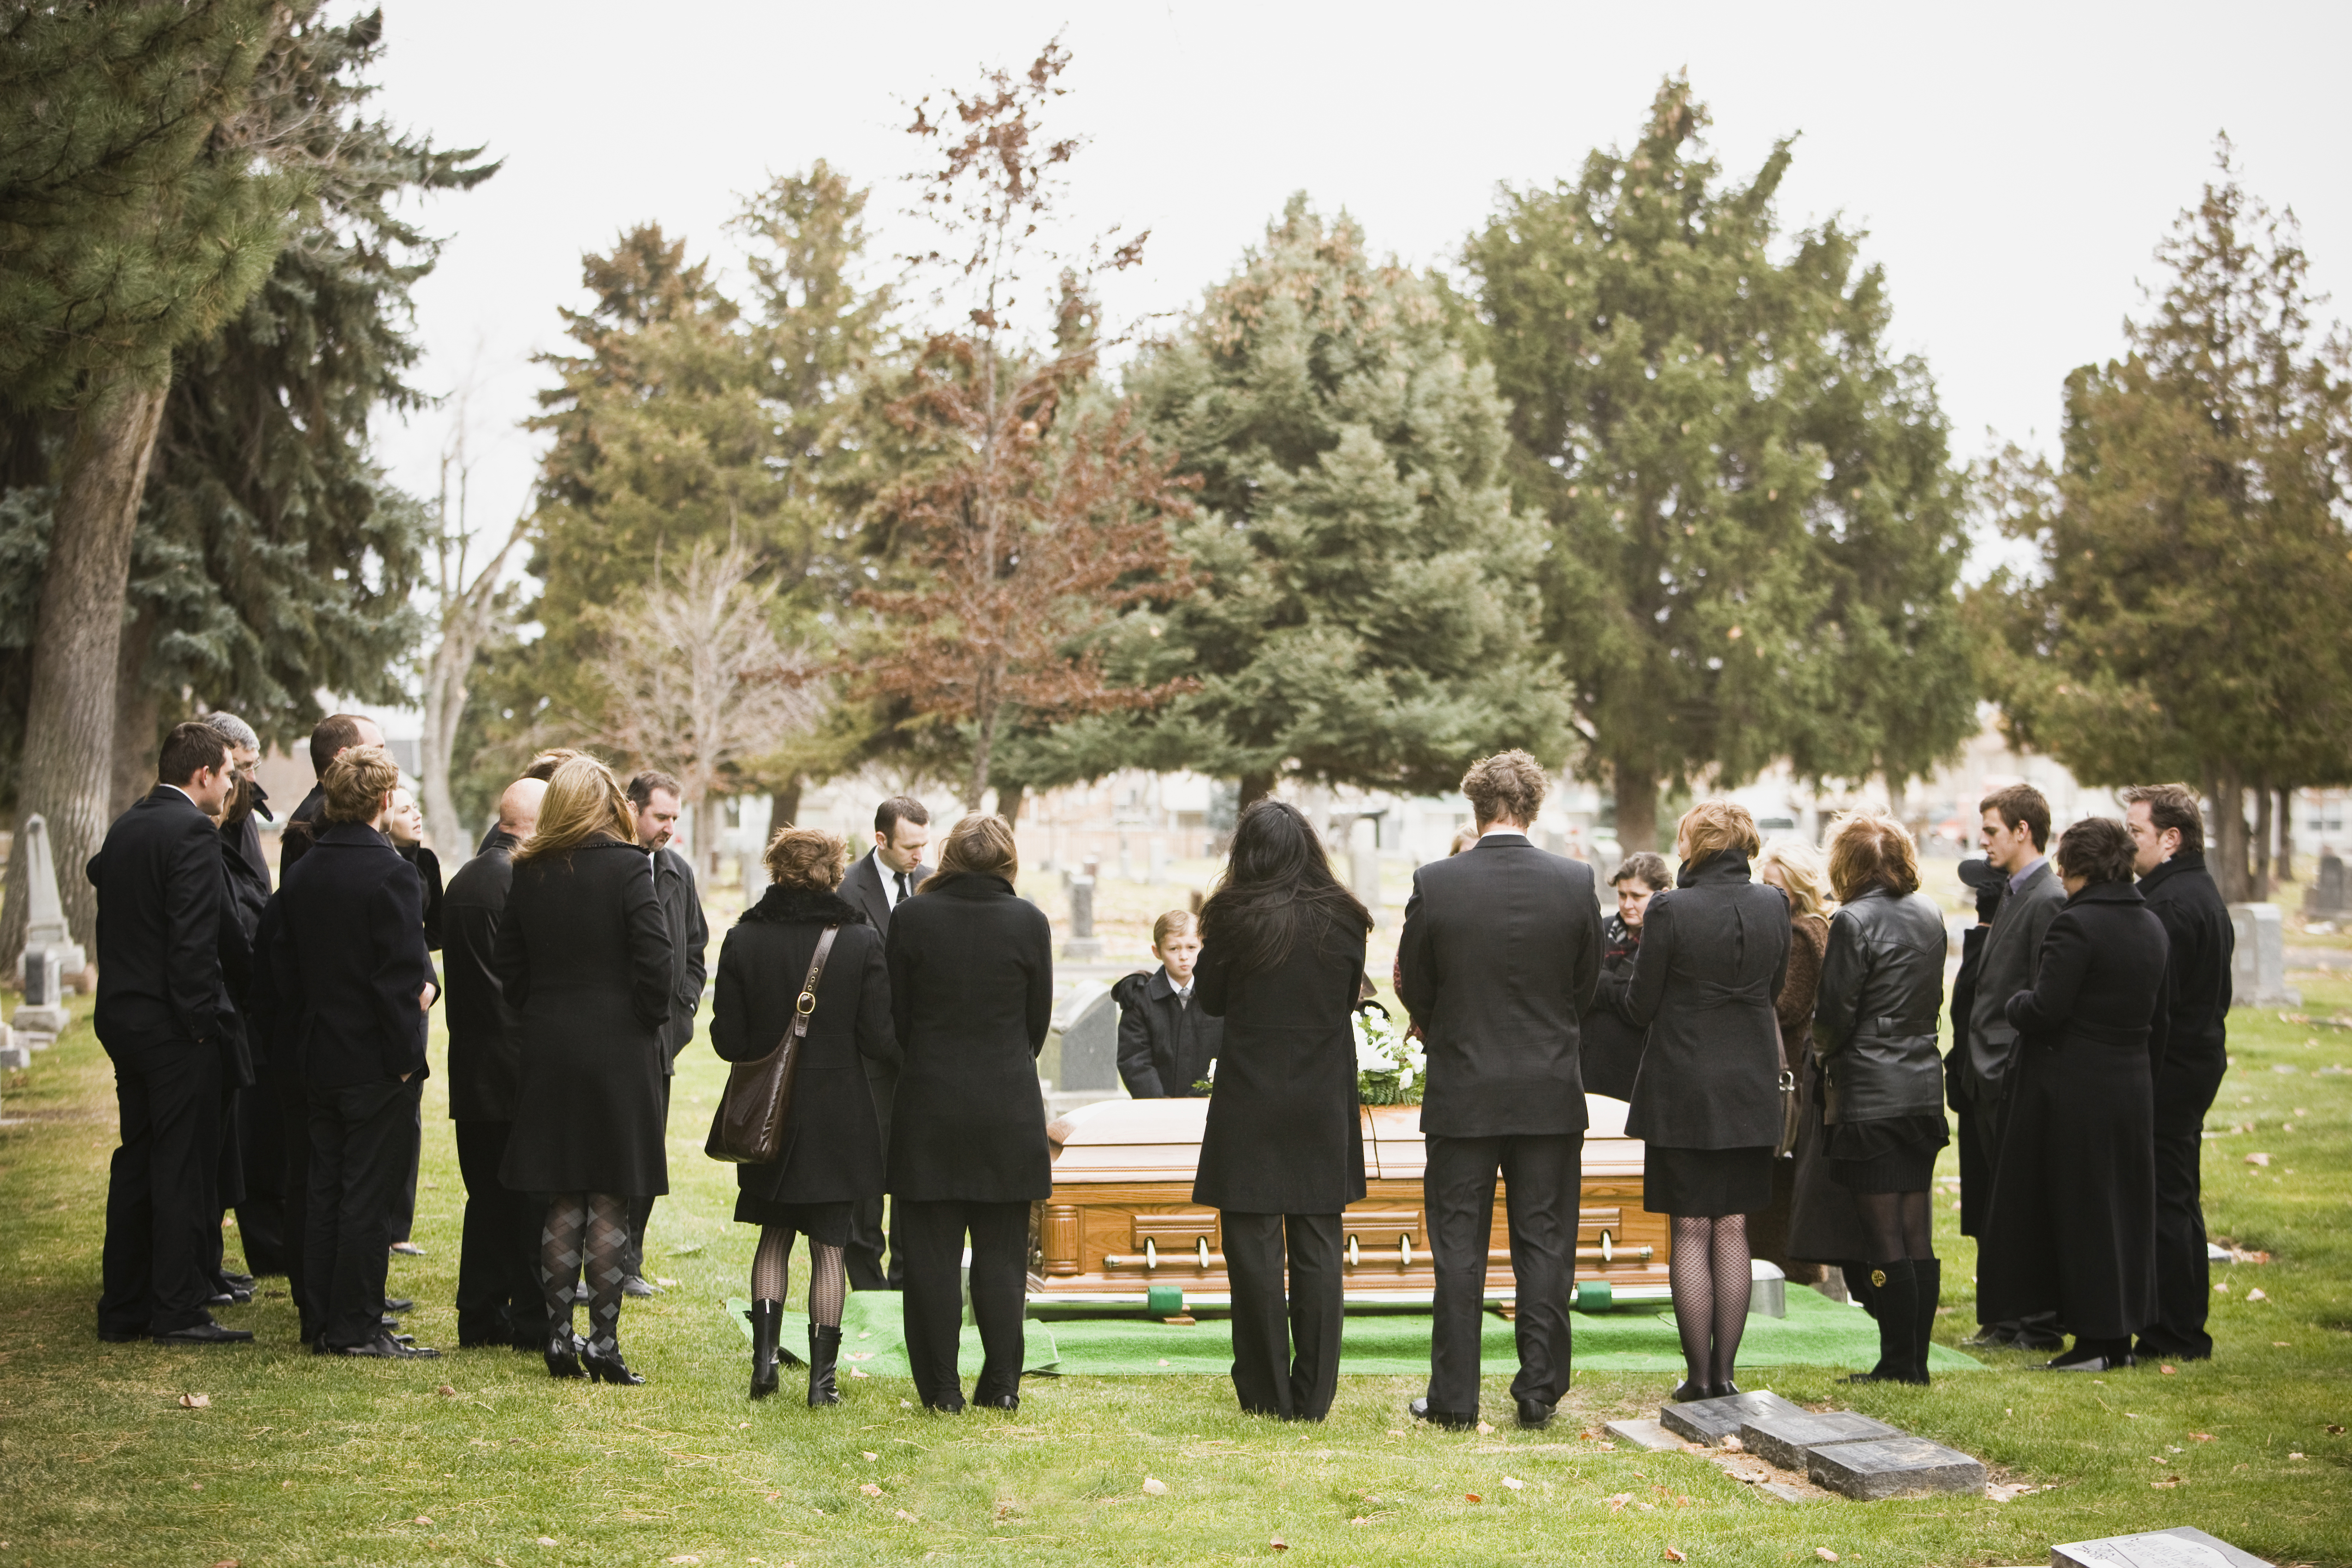 Des personnes assistant à un enterrement | Source : Getty Images